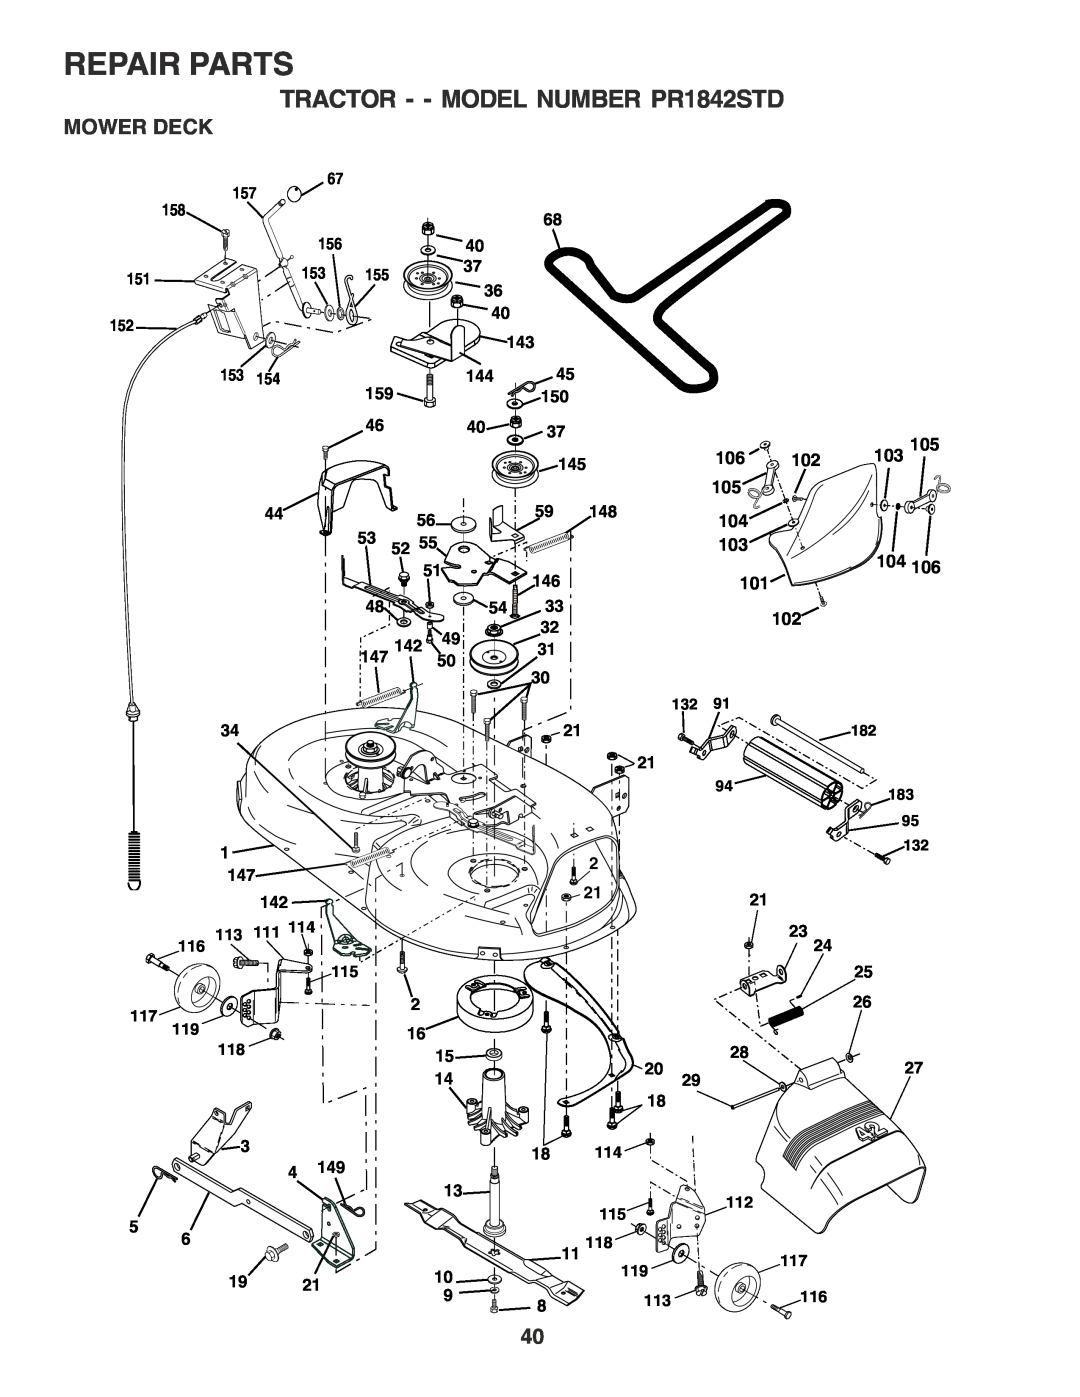 Poulan 183748 owner manual Mower Deck, Repair Parts, TRACTOR - - MODEL NUMBER PR1842STD, 103105 